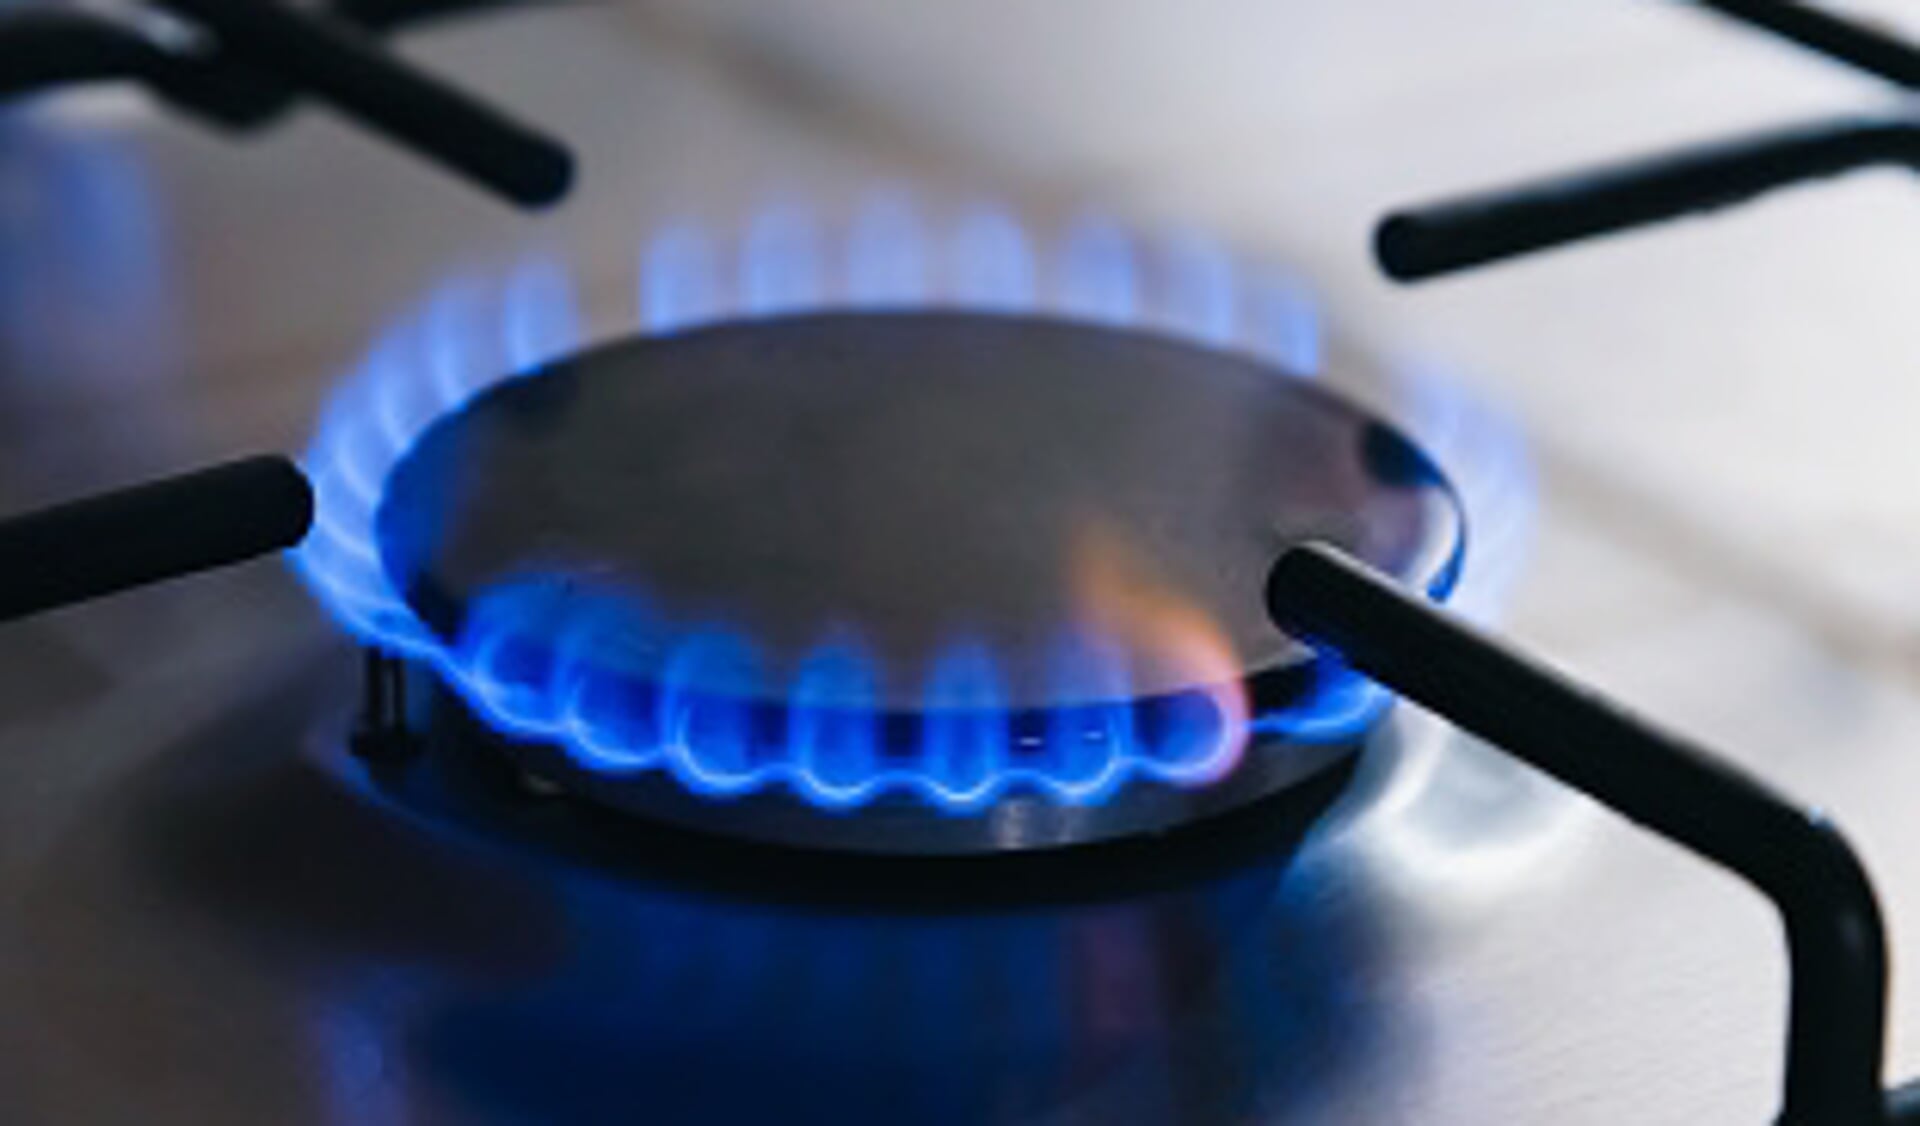 De herkomst van aardgas is door de Europese gasmarkt niet te bepalen, volgens de Vereniging van Nederlandse Gemeenten.